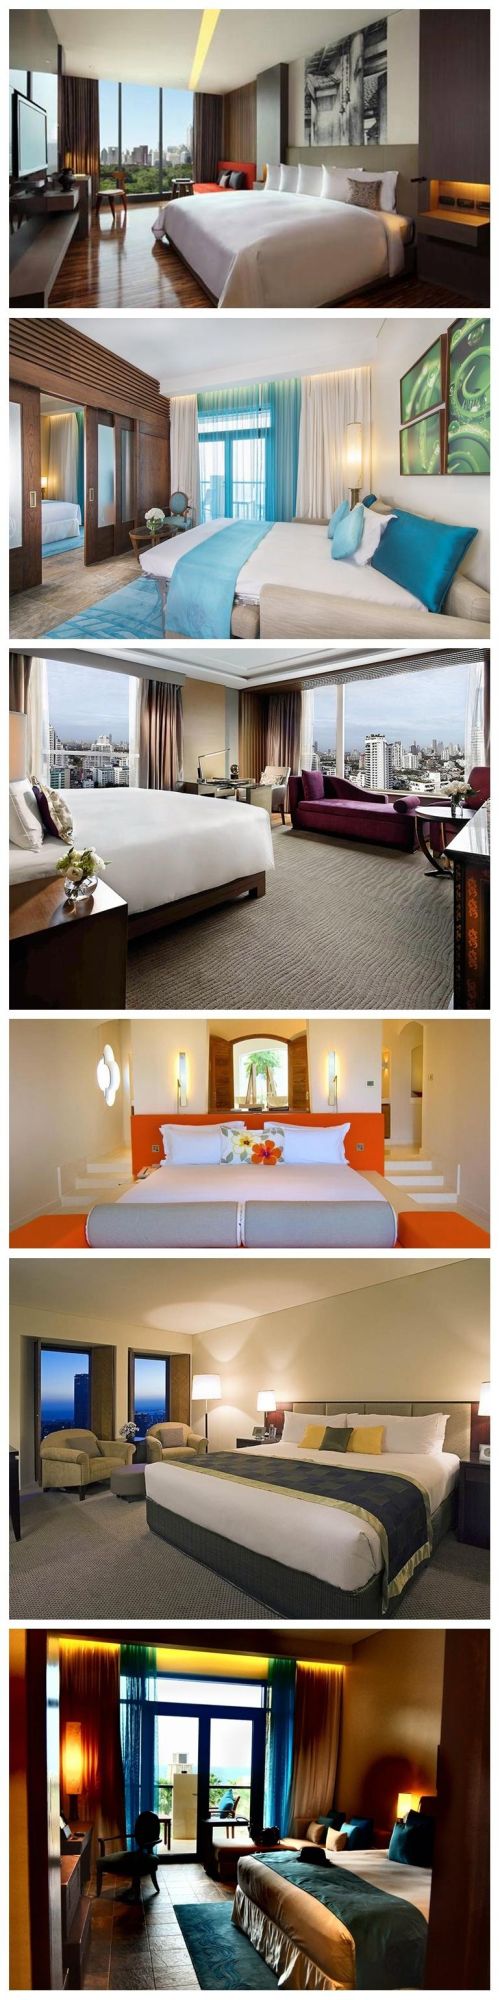 Modern Hotel Bedroom Furniture Sets for 4-5 Stars Hotel